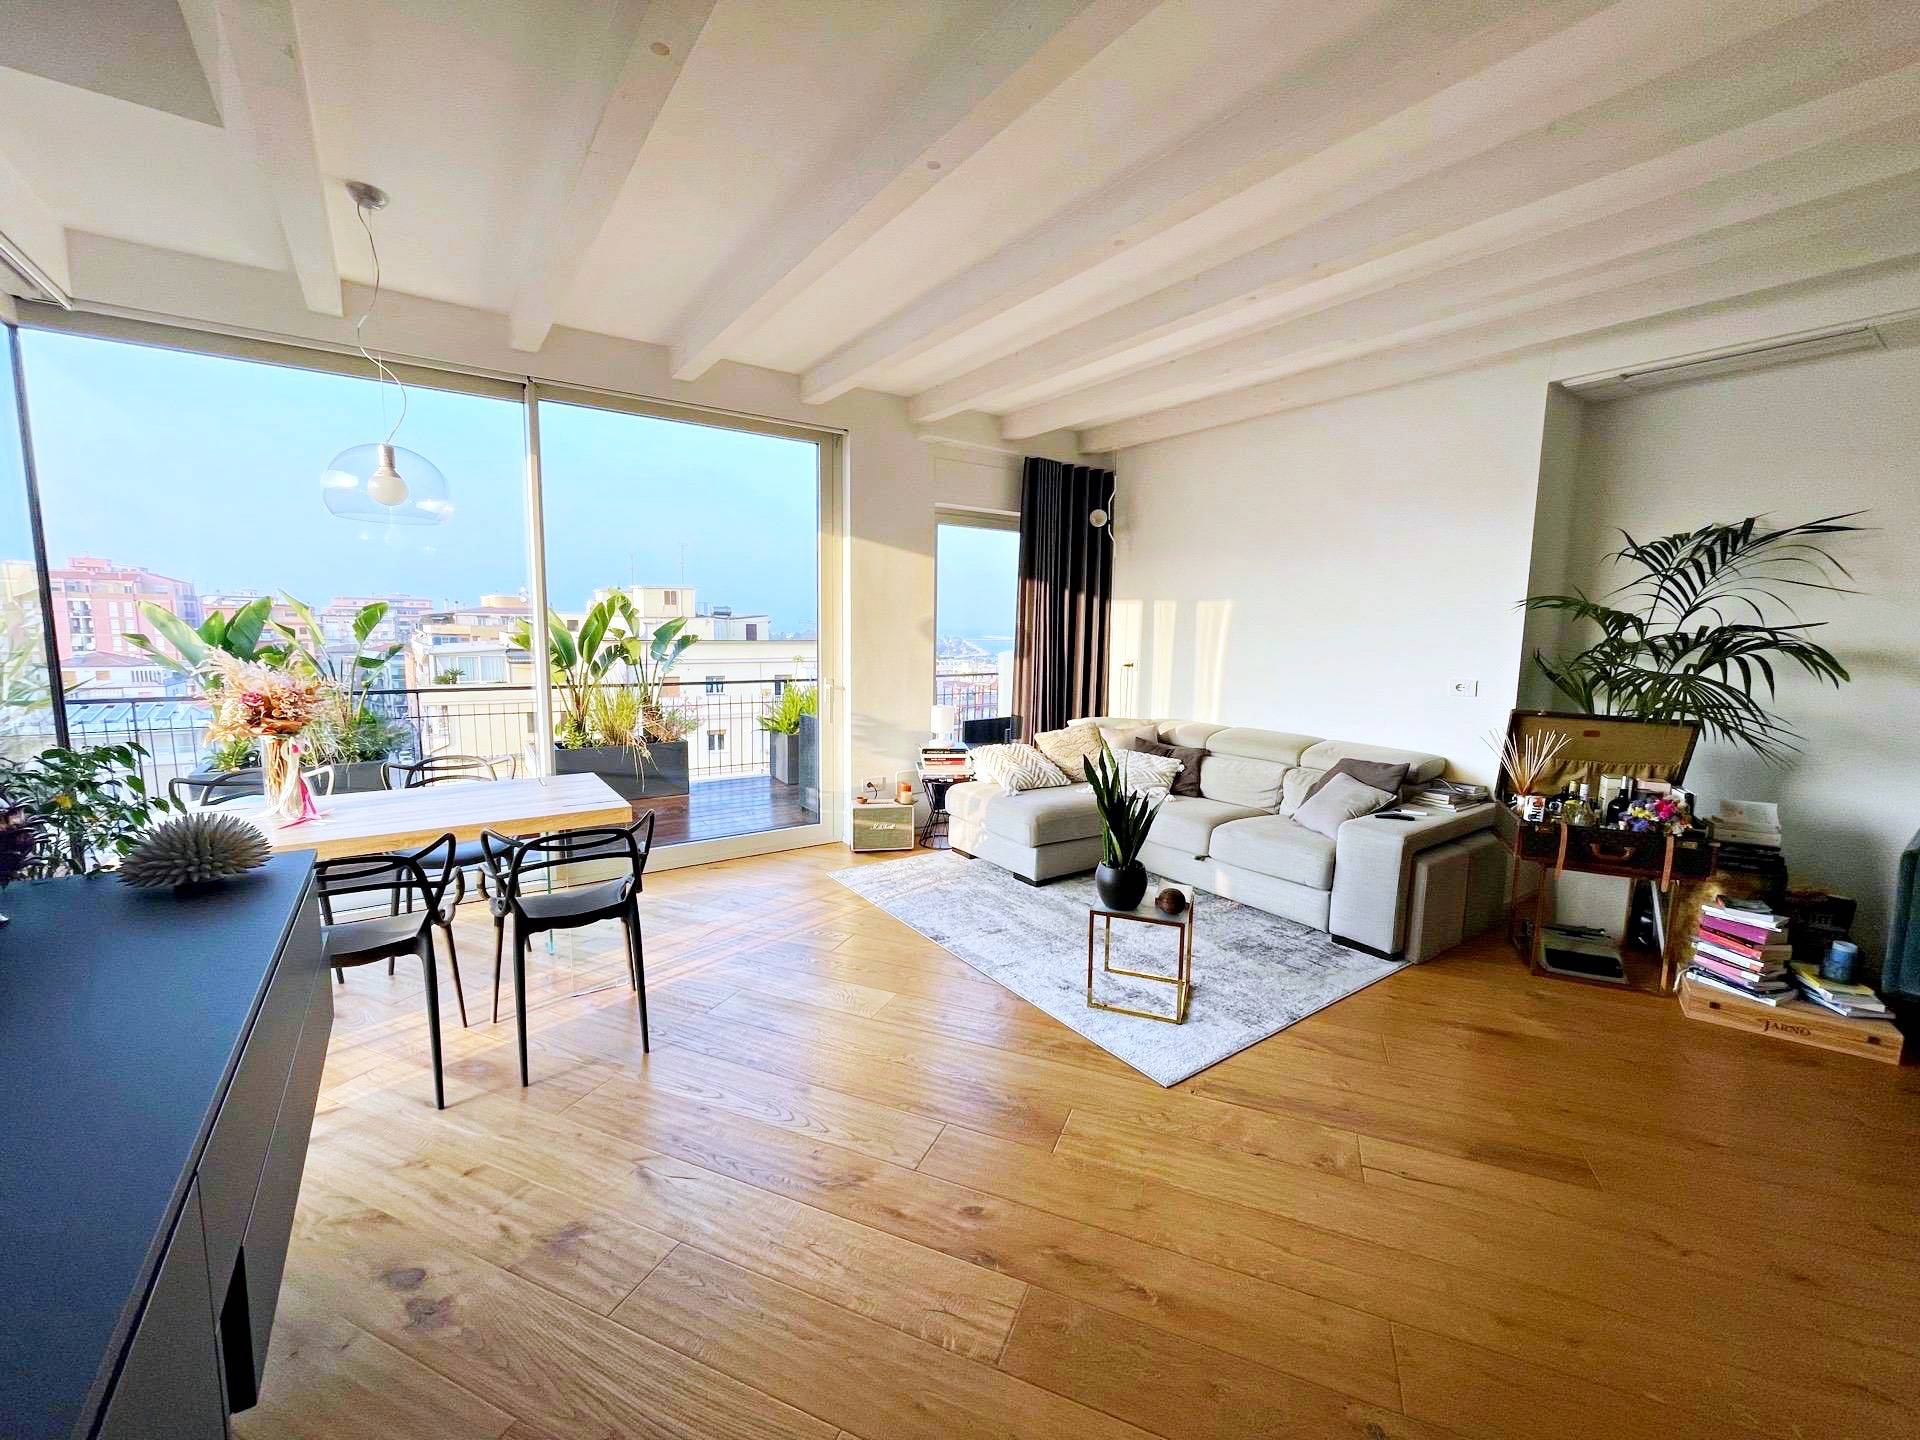 Appartamento in vendita a San Benedetto del Tronto, 3 locali, zona Località: ZonaCentrale, prezzo € 330.000 | PortaleAgenzieImmobiliari.it